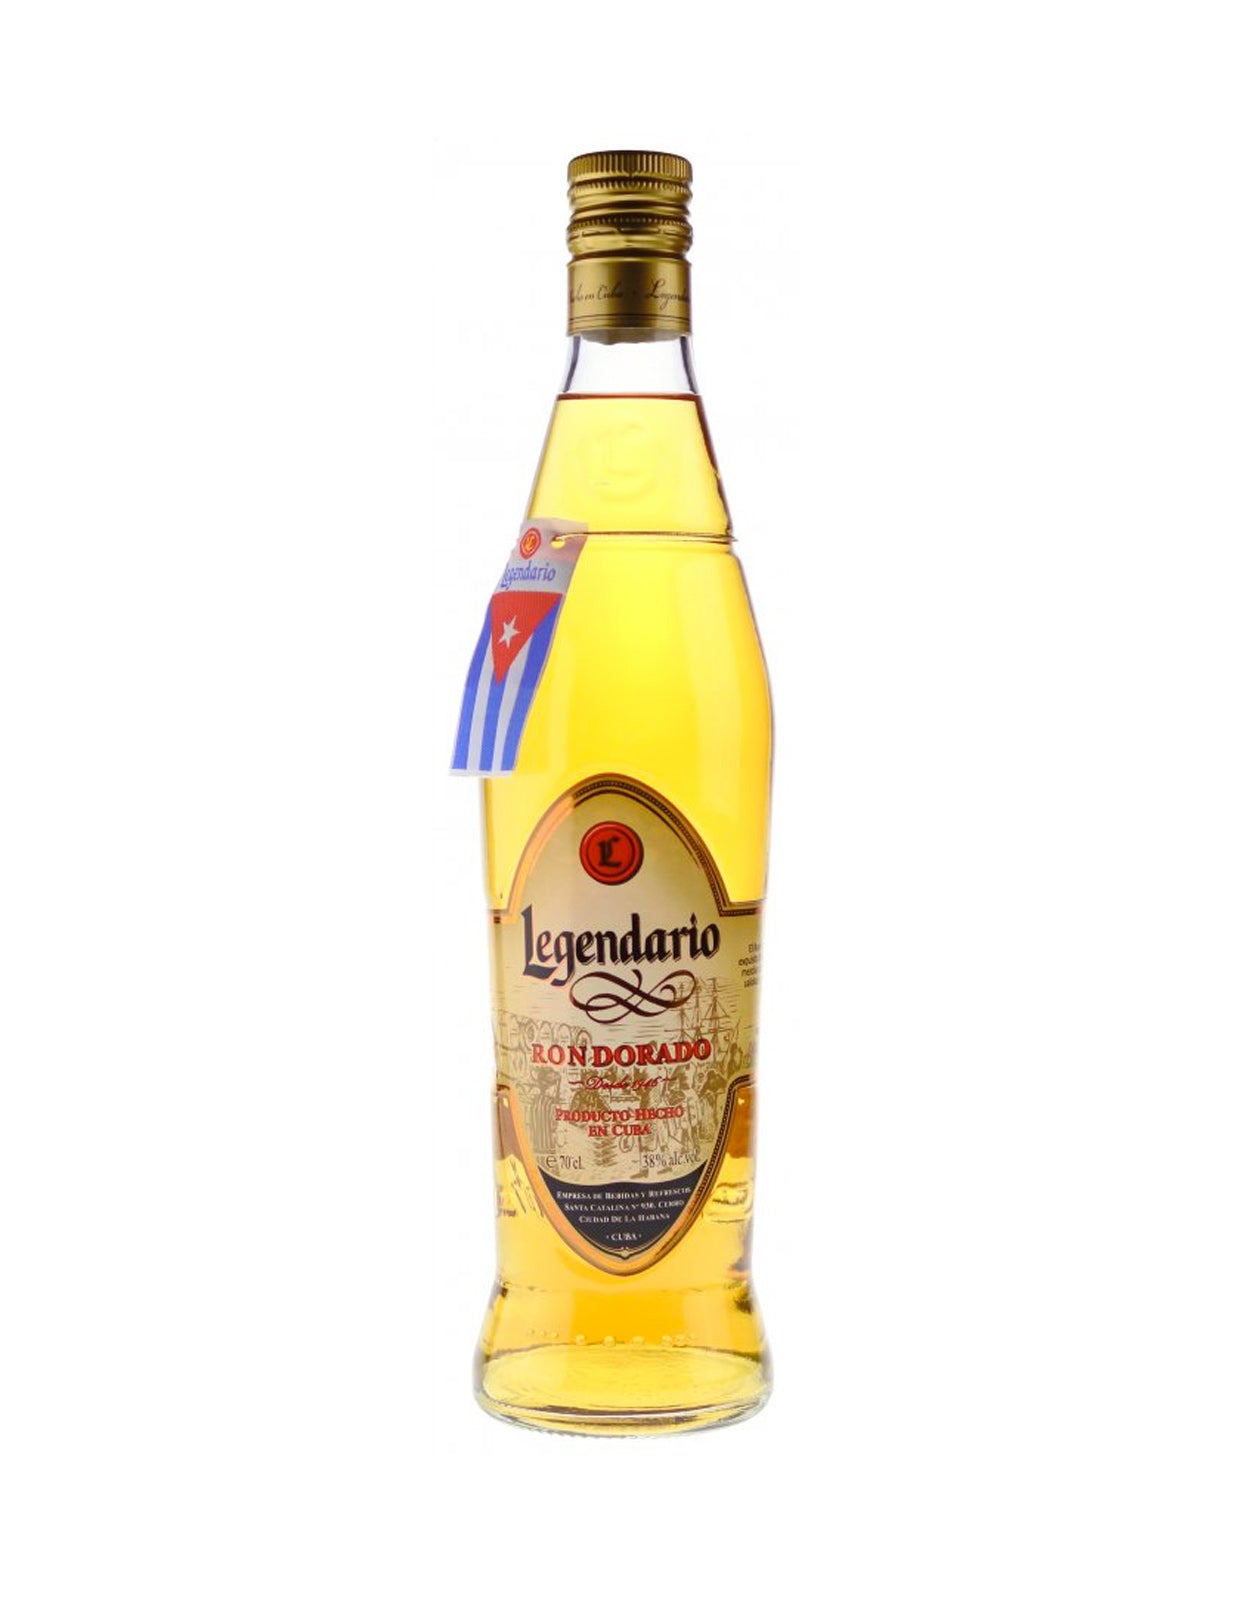 Legendario Ron Dorado Amber Rum